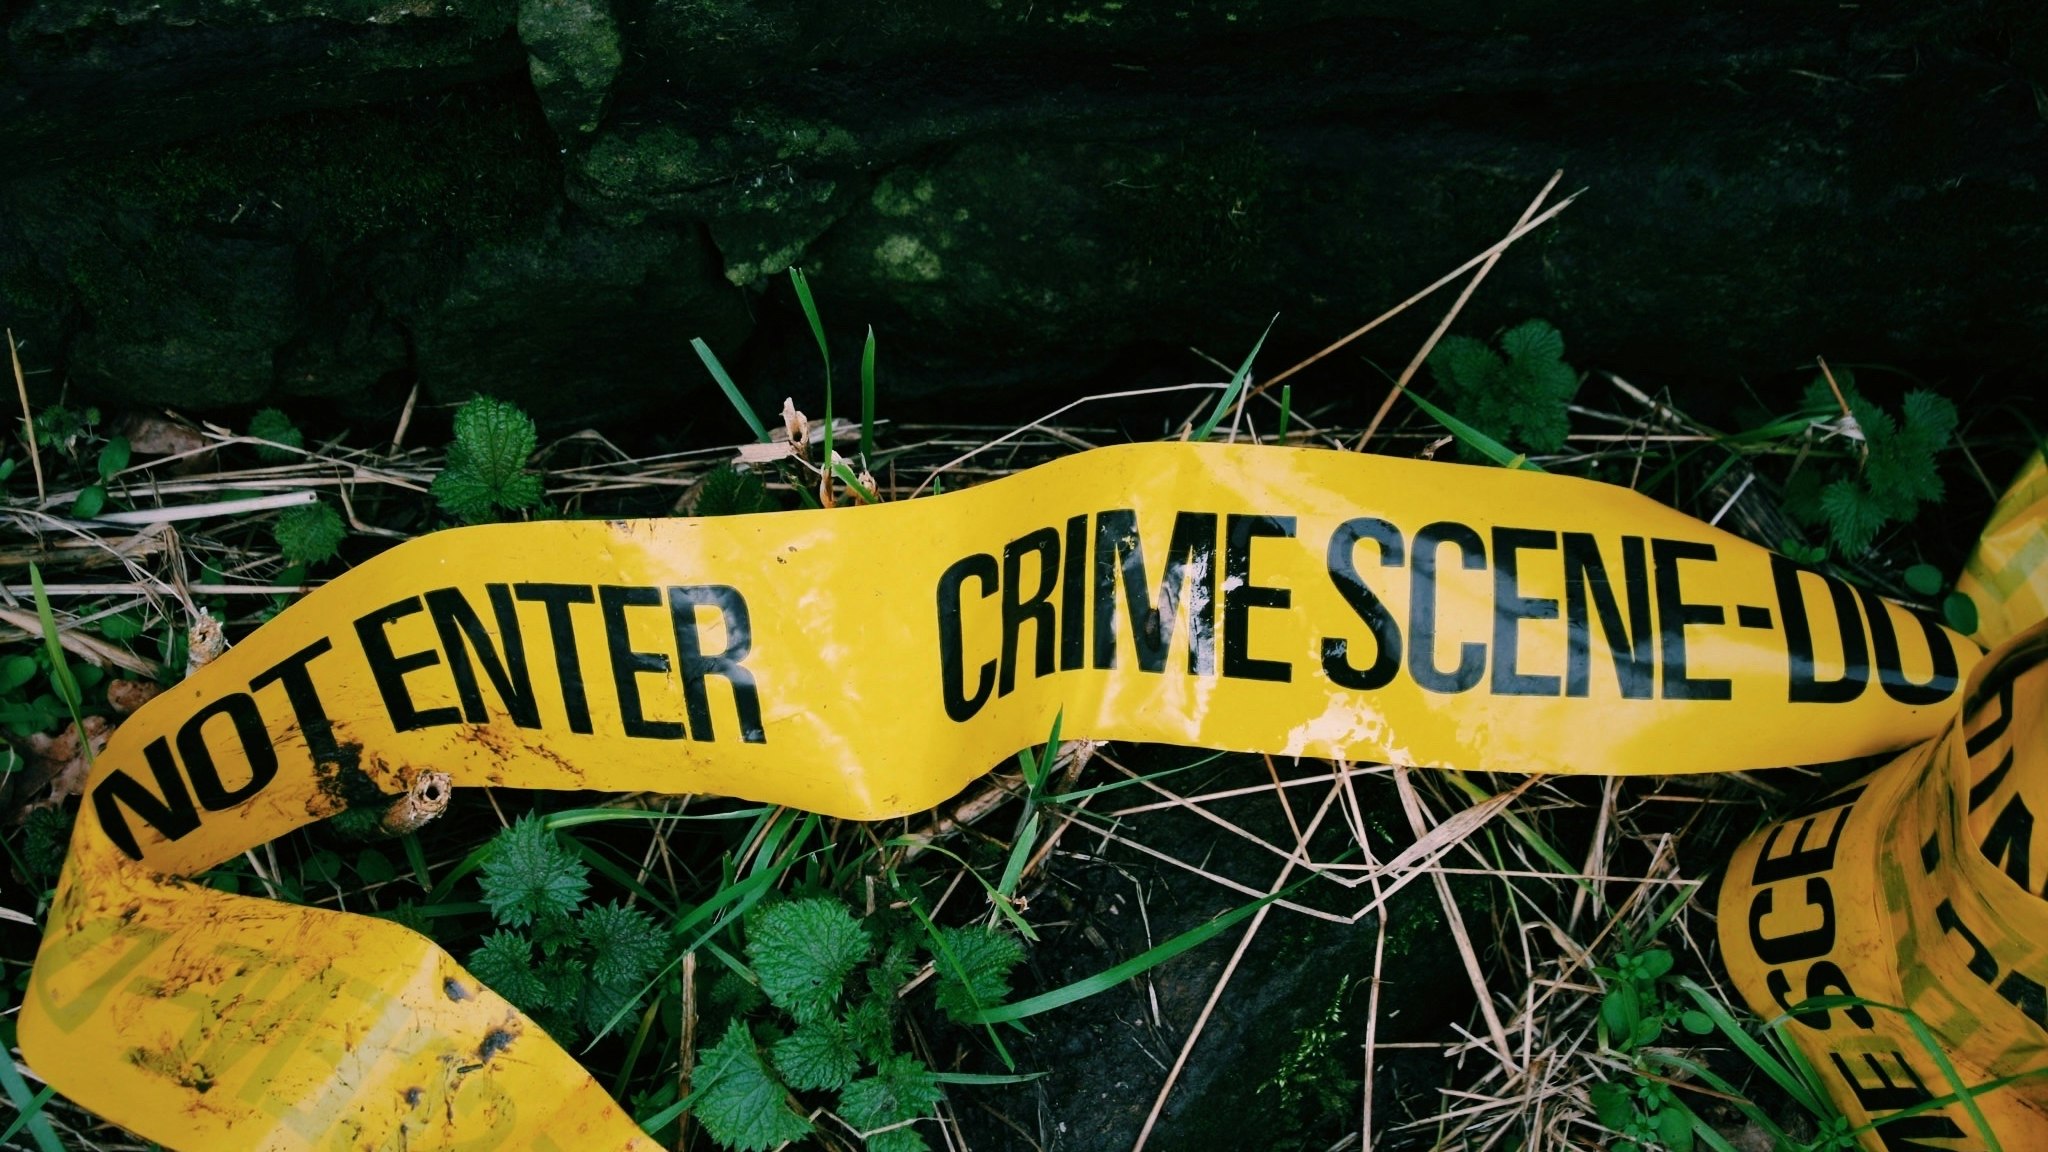 Crime Scene Tape Fallen On Grass - stock photo